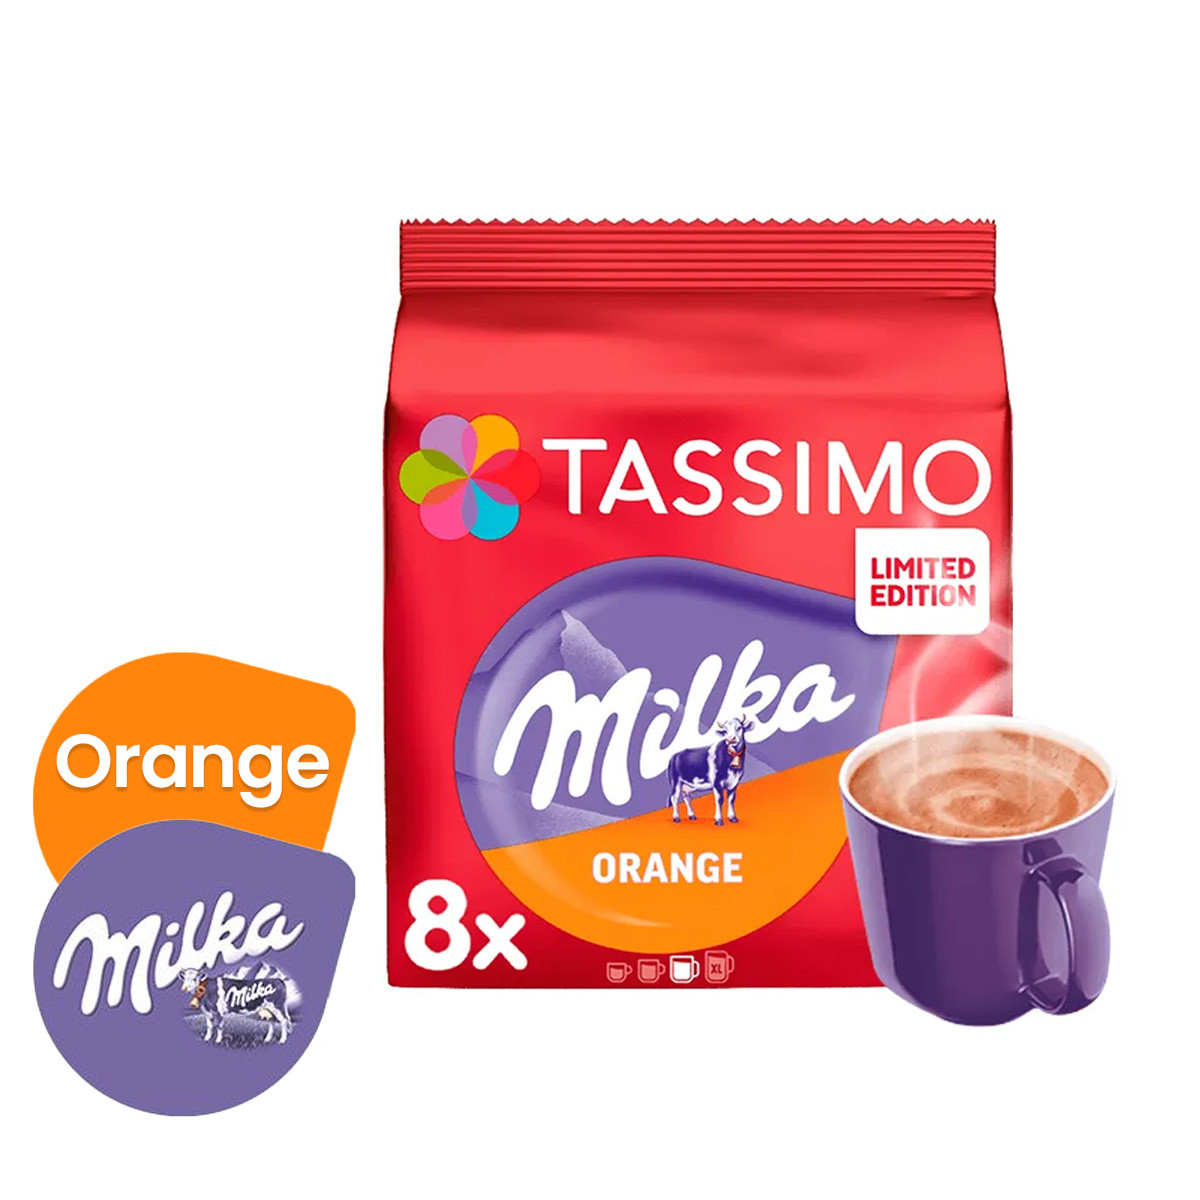 Capsules de chocolat Milka - Tassimo - 8pcs